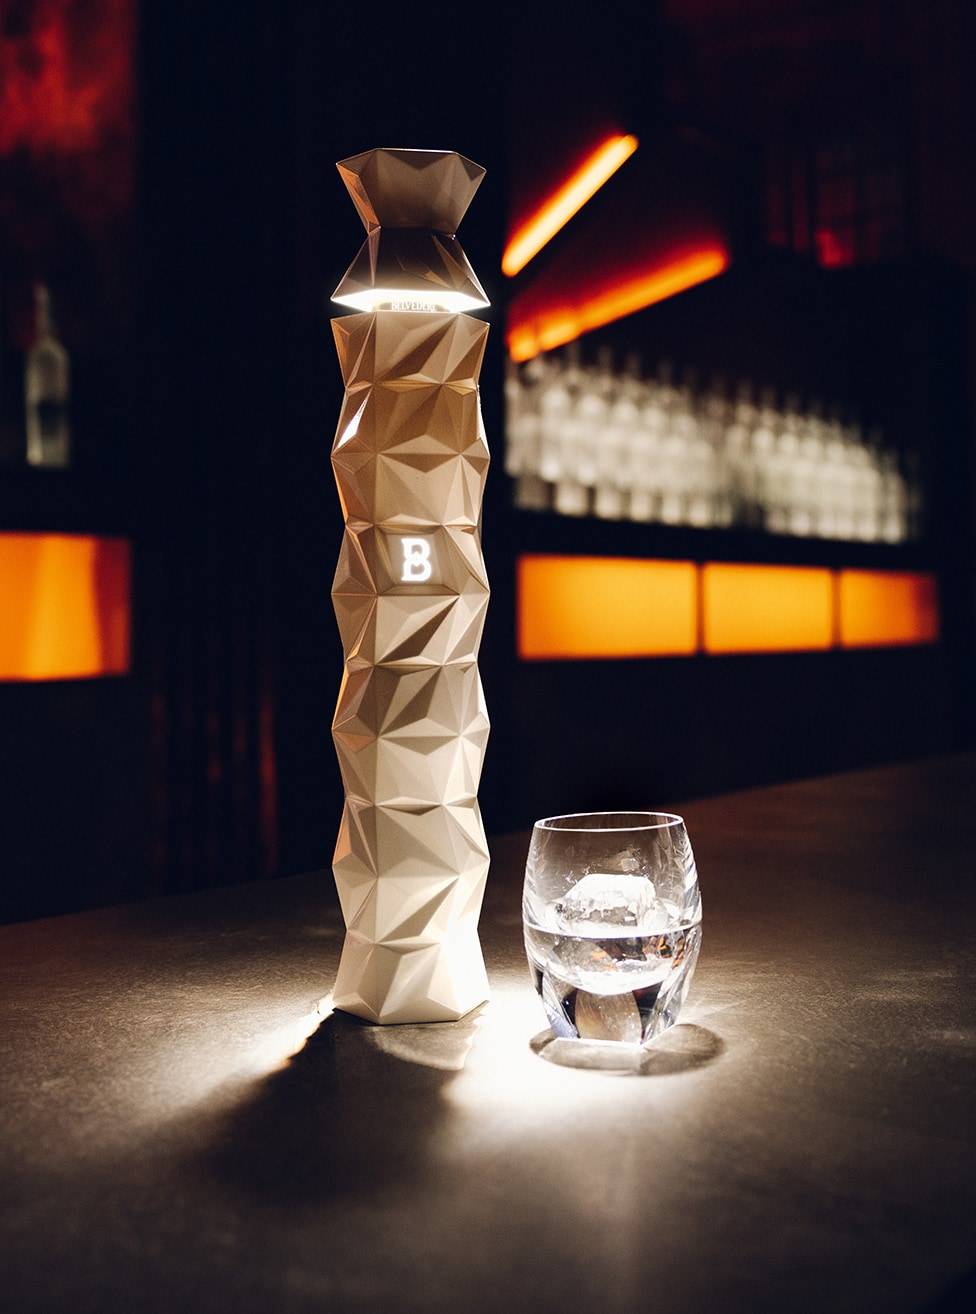 Elegante und luxuriöse Präsentation von Belvedere 10, eingeschenkt in ein raffiniertes Glas.